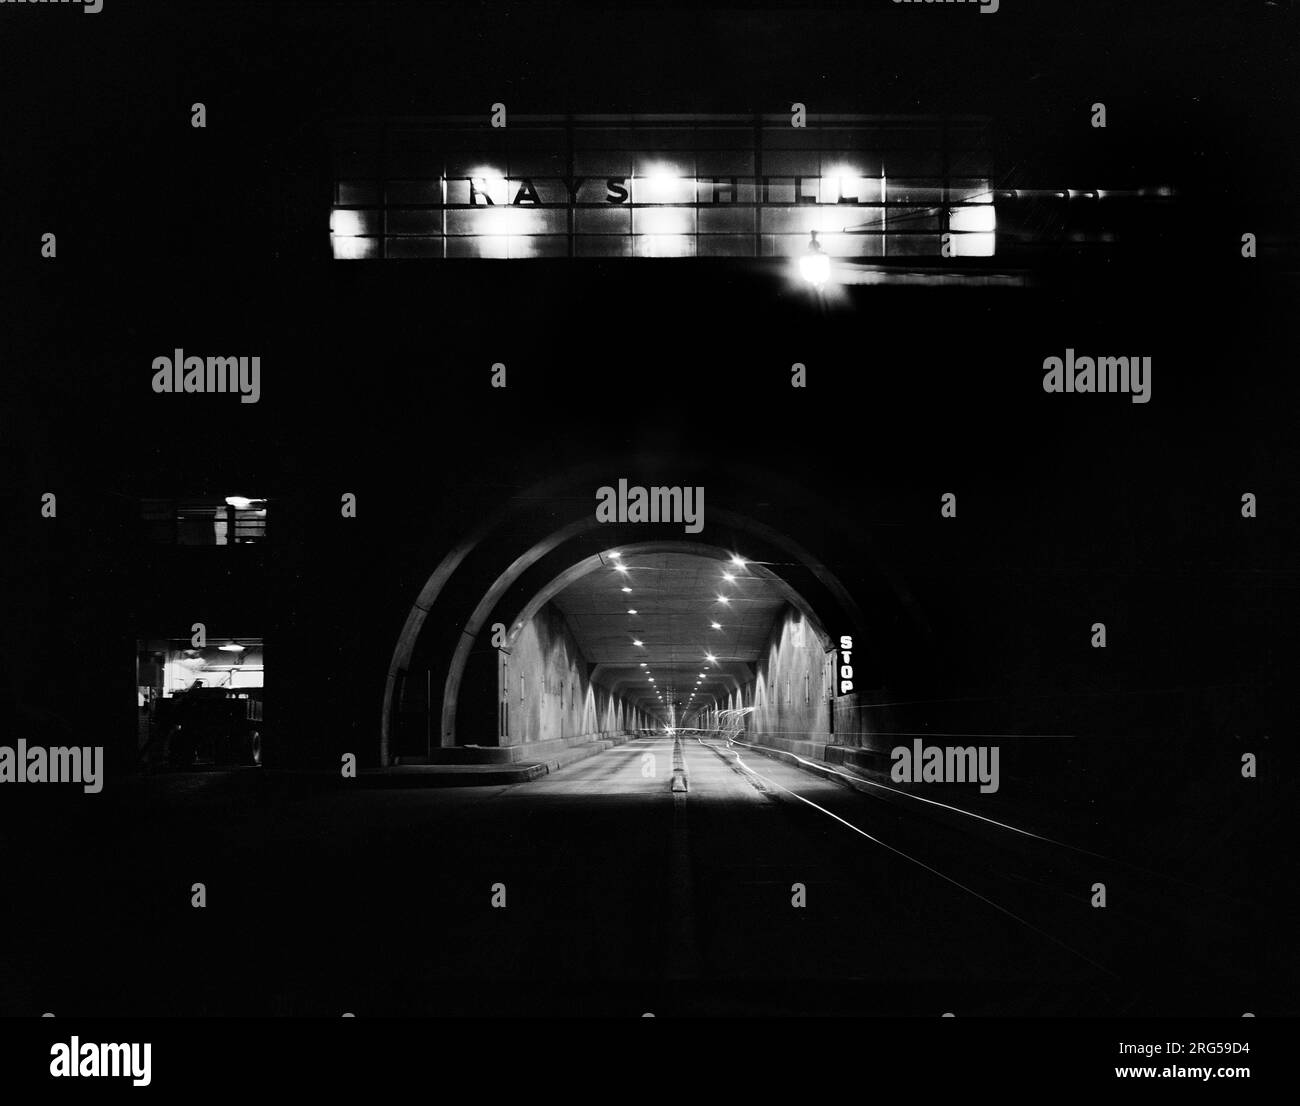 Tunnel at night, Pennsylvania Turnpike, Pennsylvania, USA, Arthur Rothstein, U.S. Office of War Information, July 1942 Stock Photo